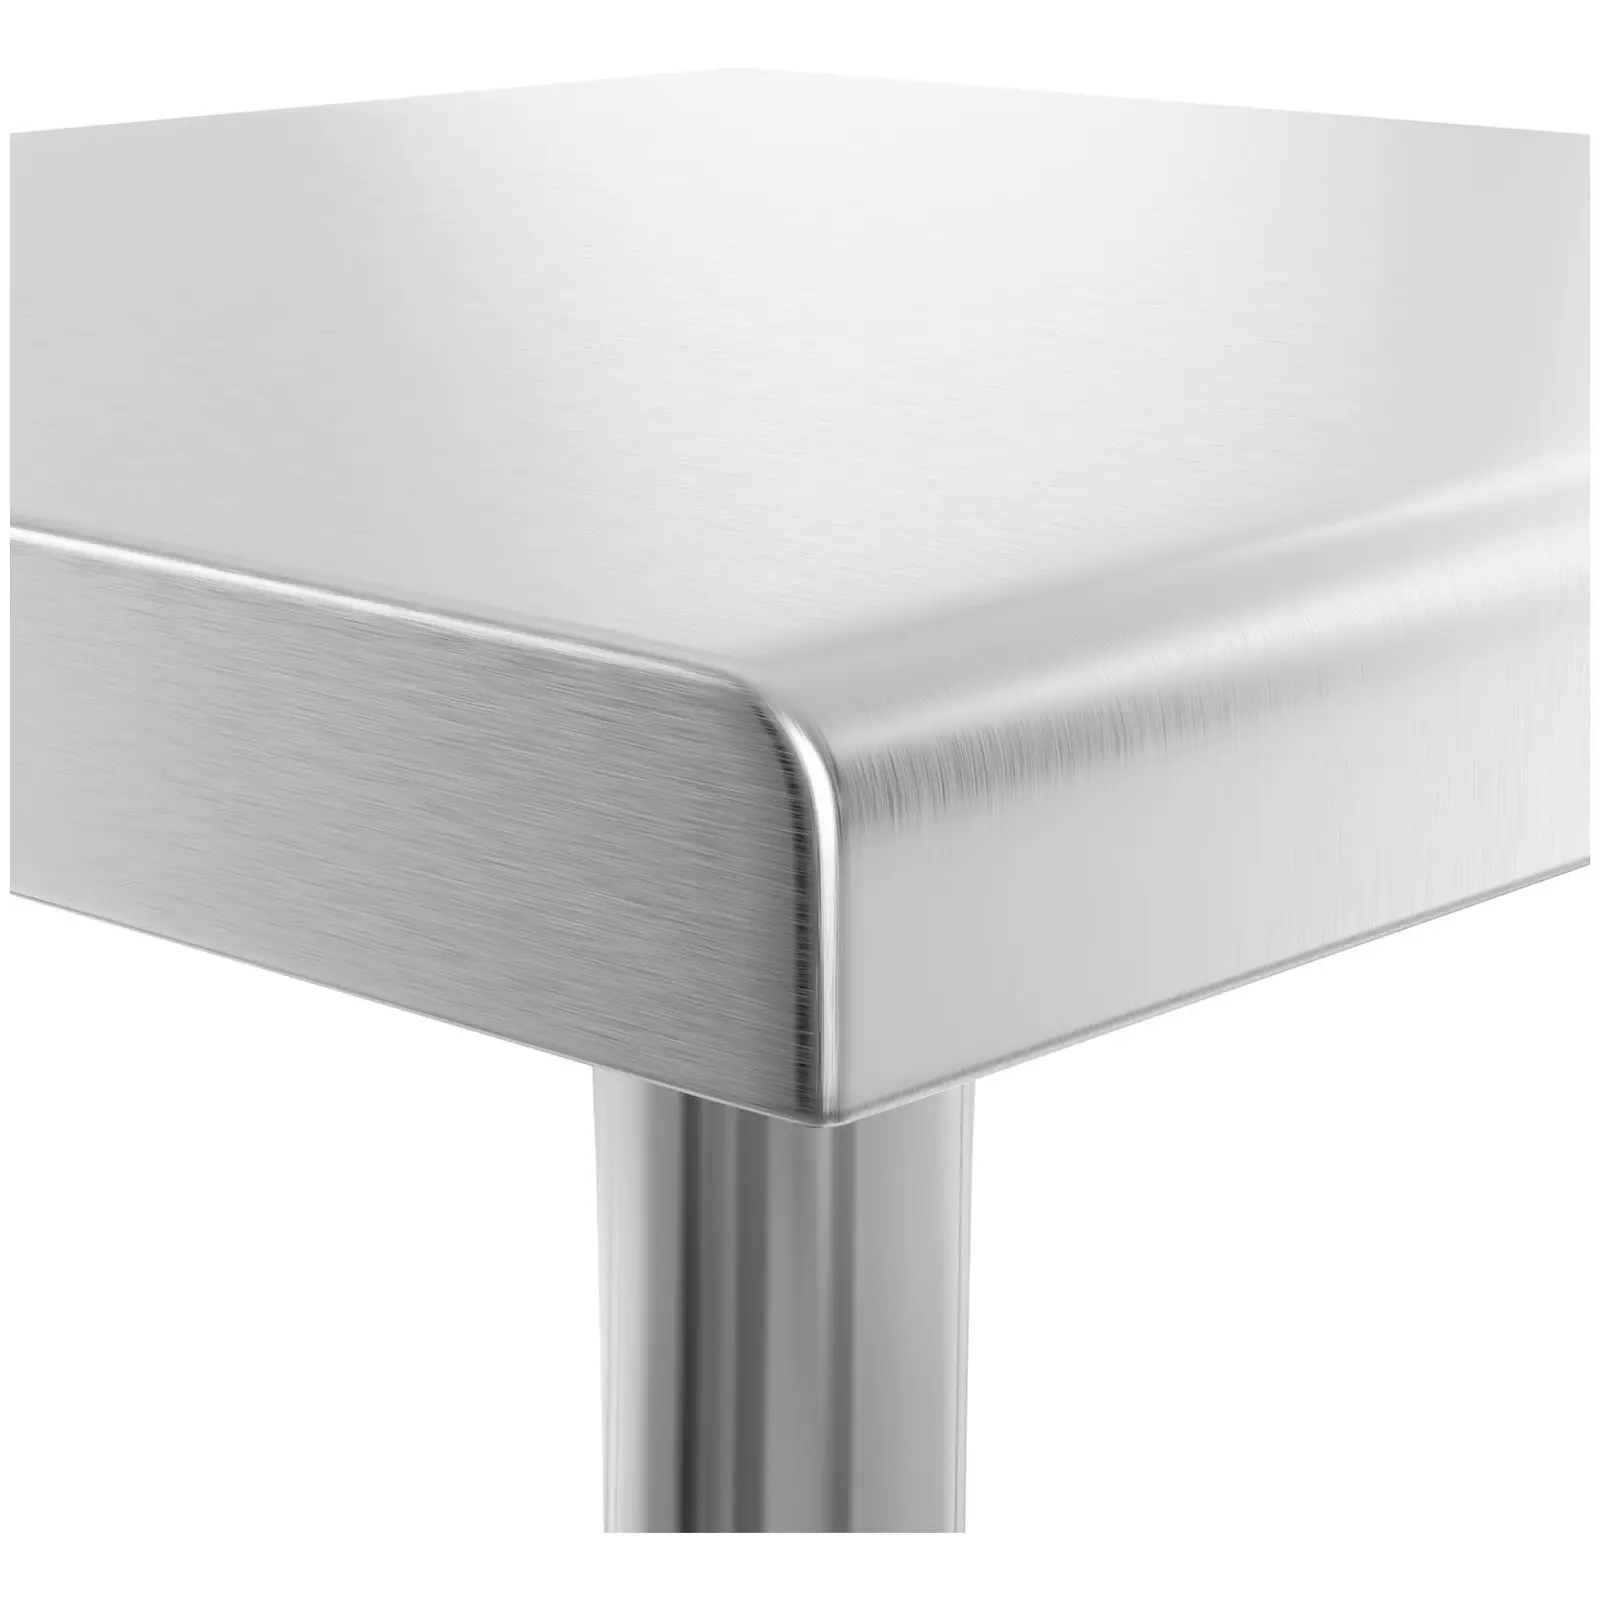 Rozsdamentes acél asztal - 90 x 60 cm - 210 kg terhelhetőség